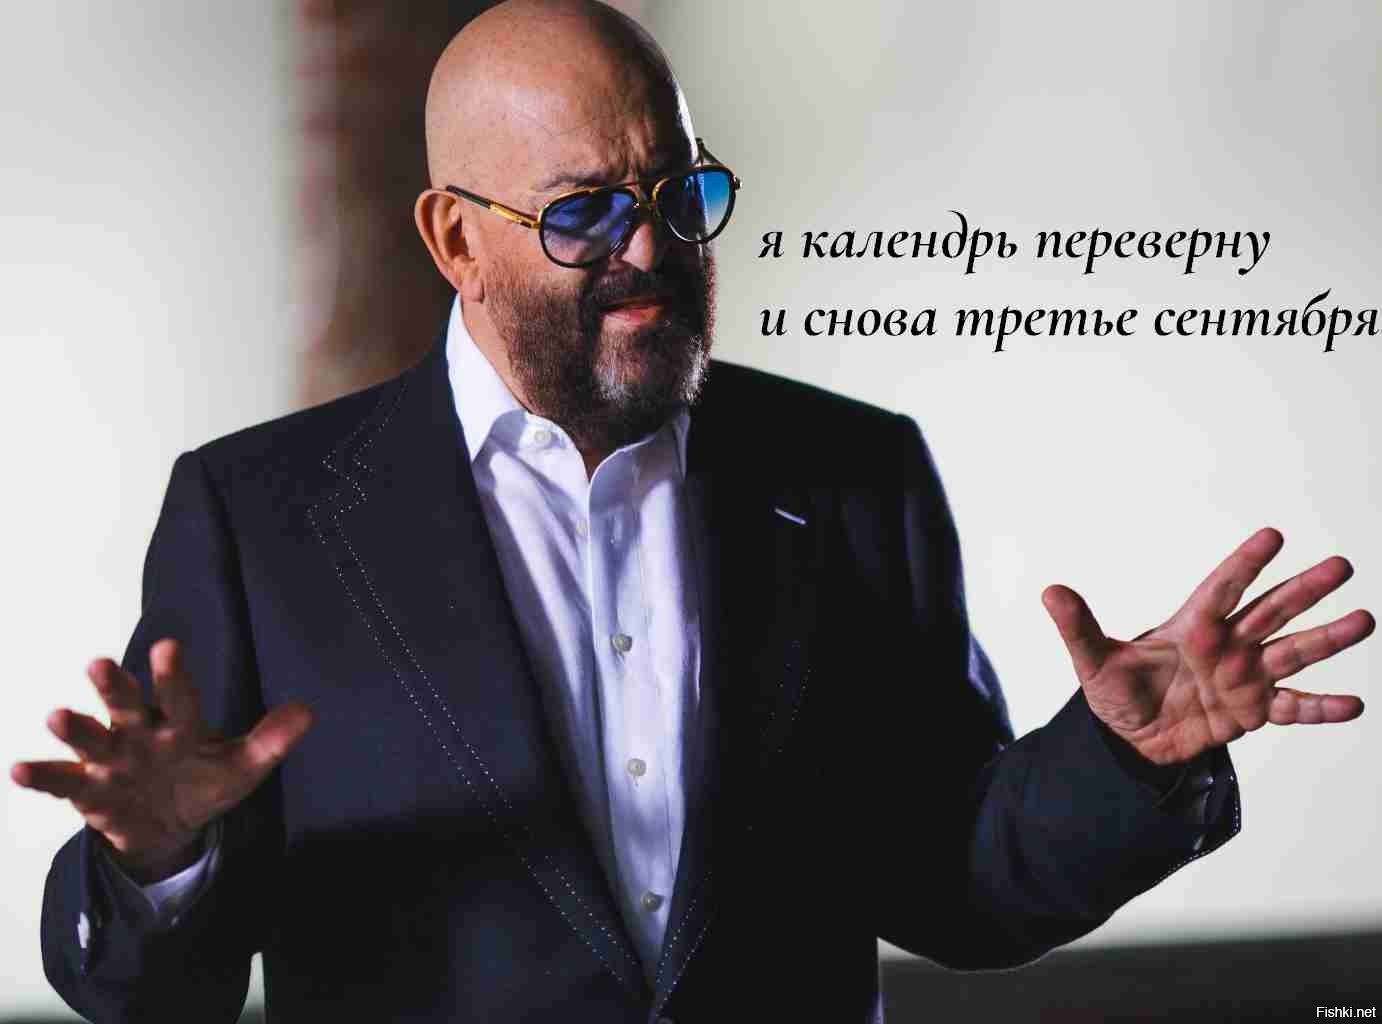 10 самых популярных приколов про песню "3 сентября" Михаила Шуфутинского